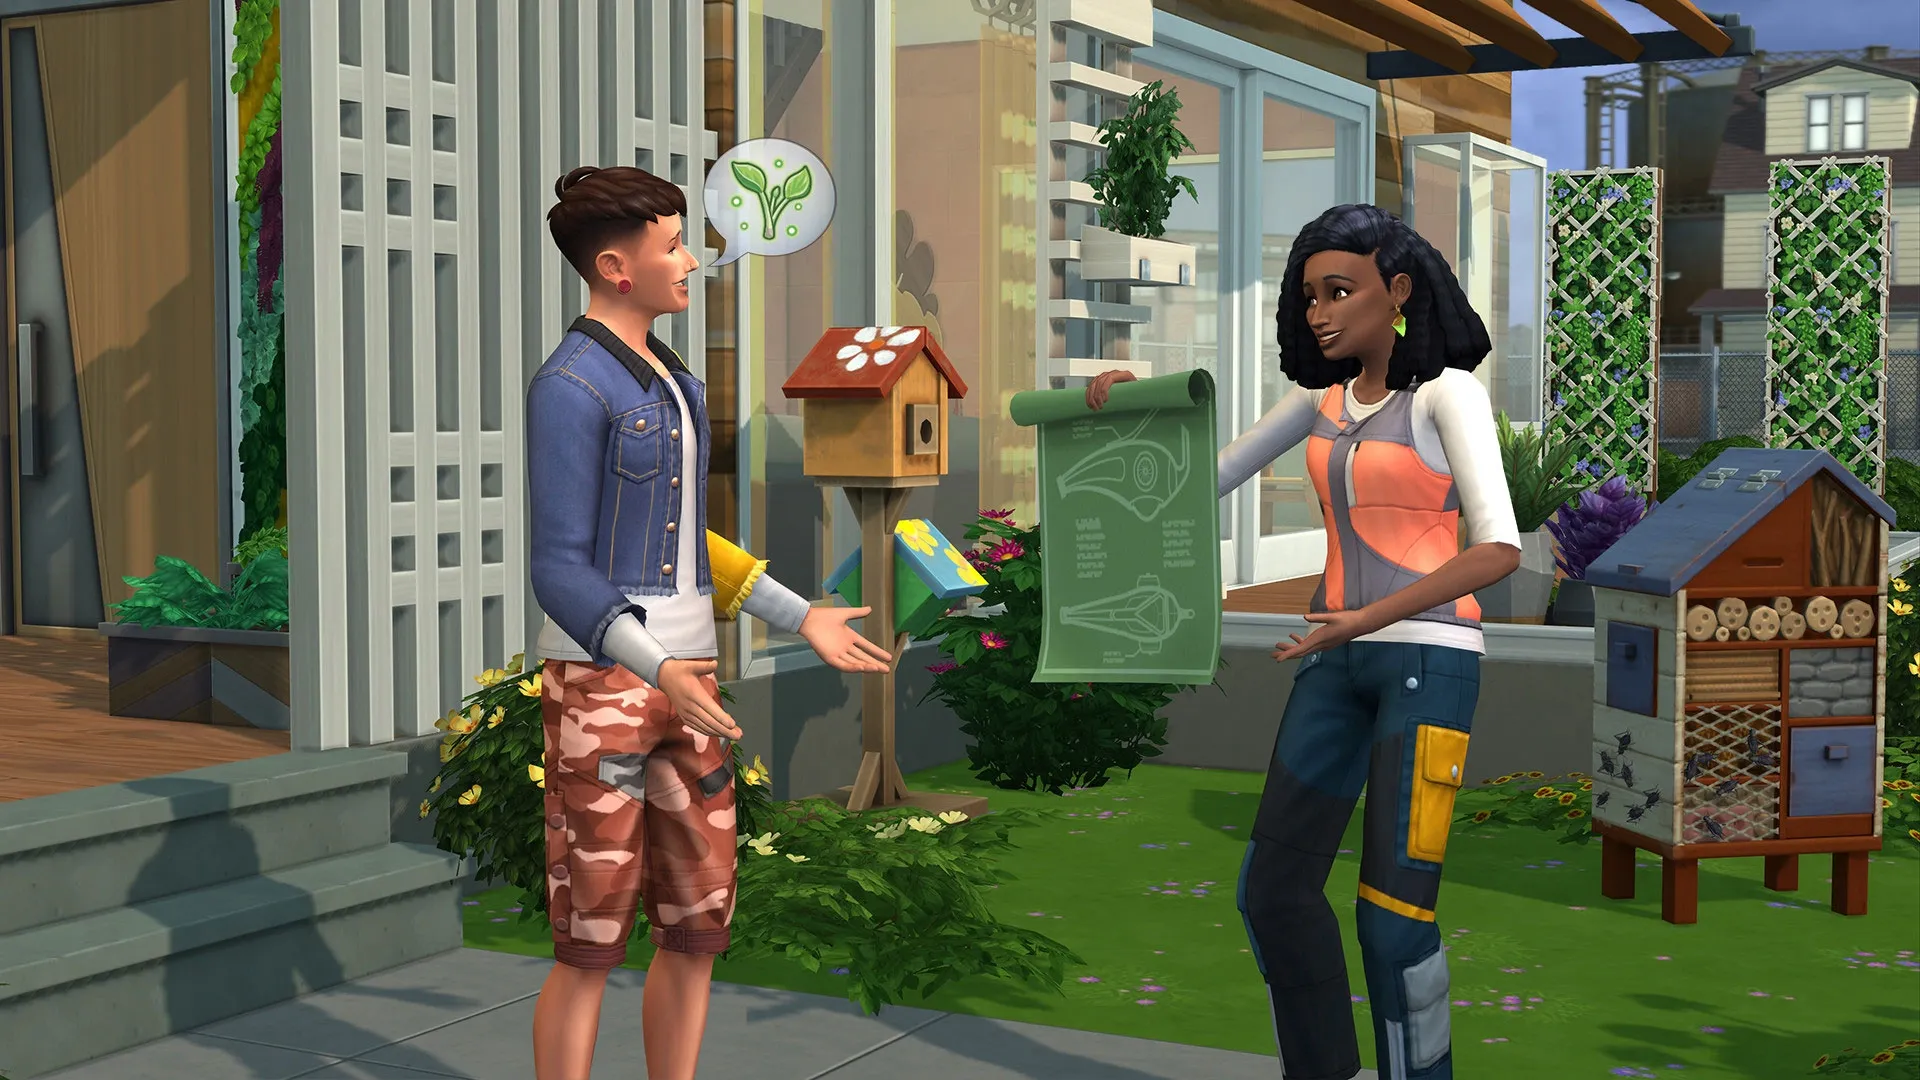 The Sims 4: Códigos e Cheats